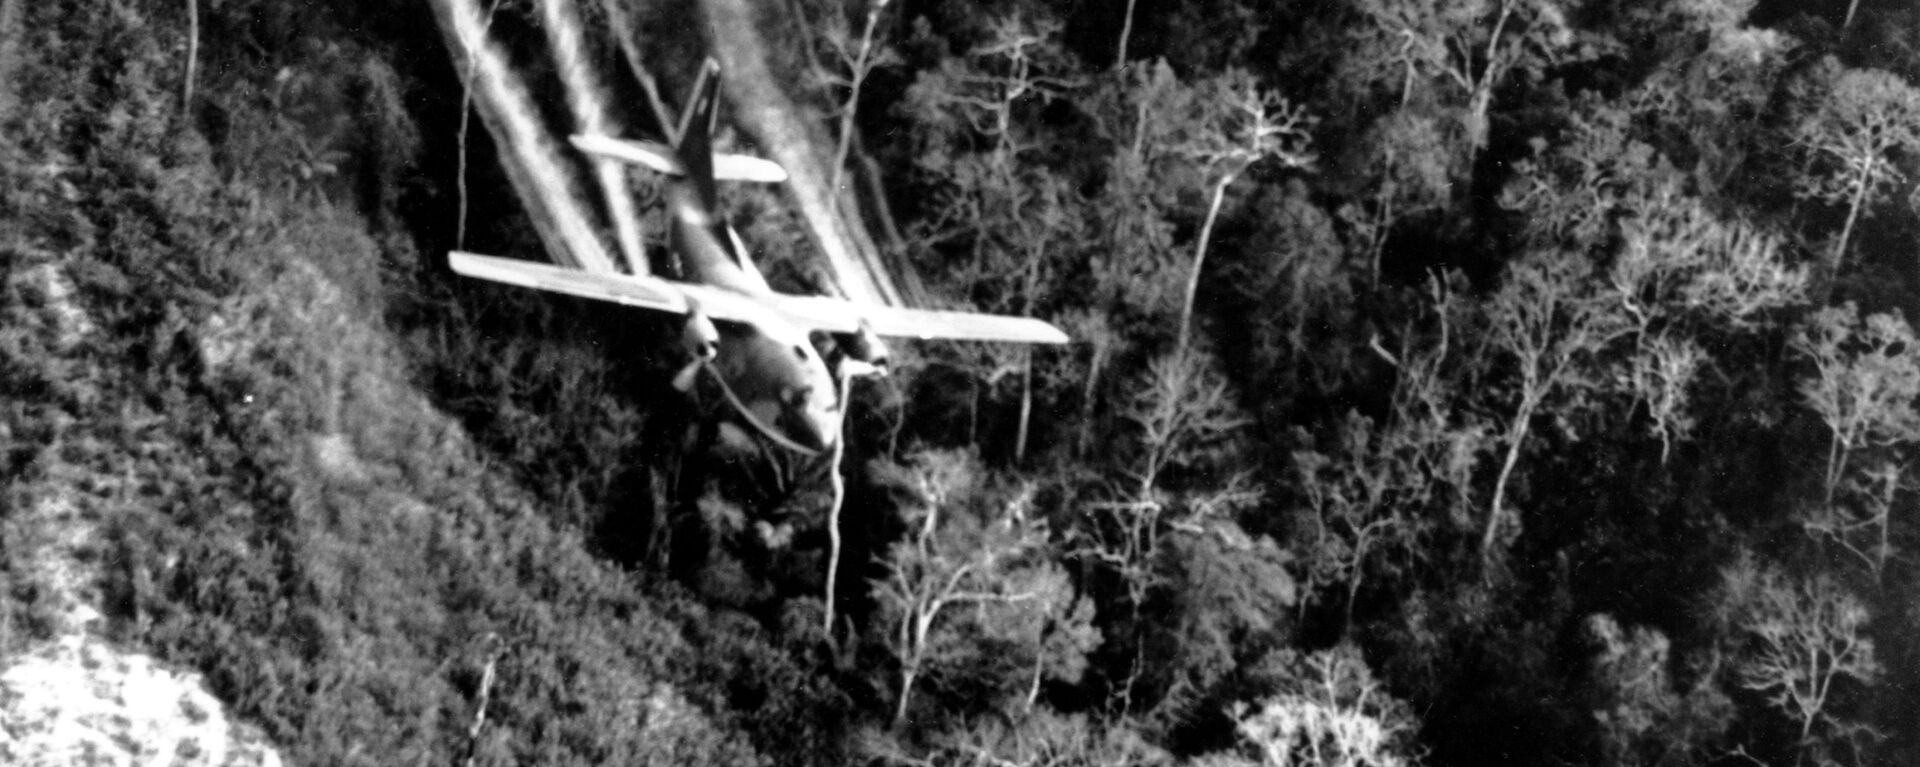 Chiến tranh Việt Nam năm 1966. Quân đội Mỹ sử dụng chất độc da cam  - Sputnik Việt Nam, 1920, 10.09.2019